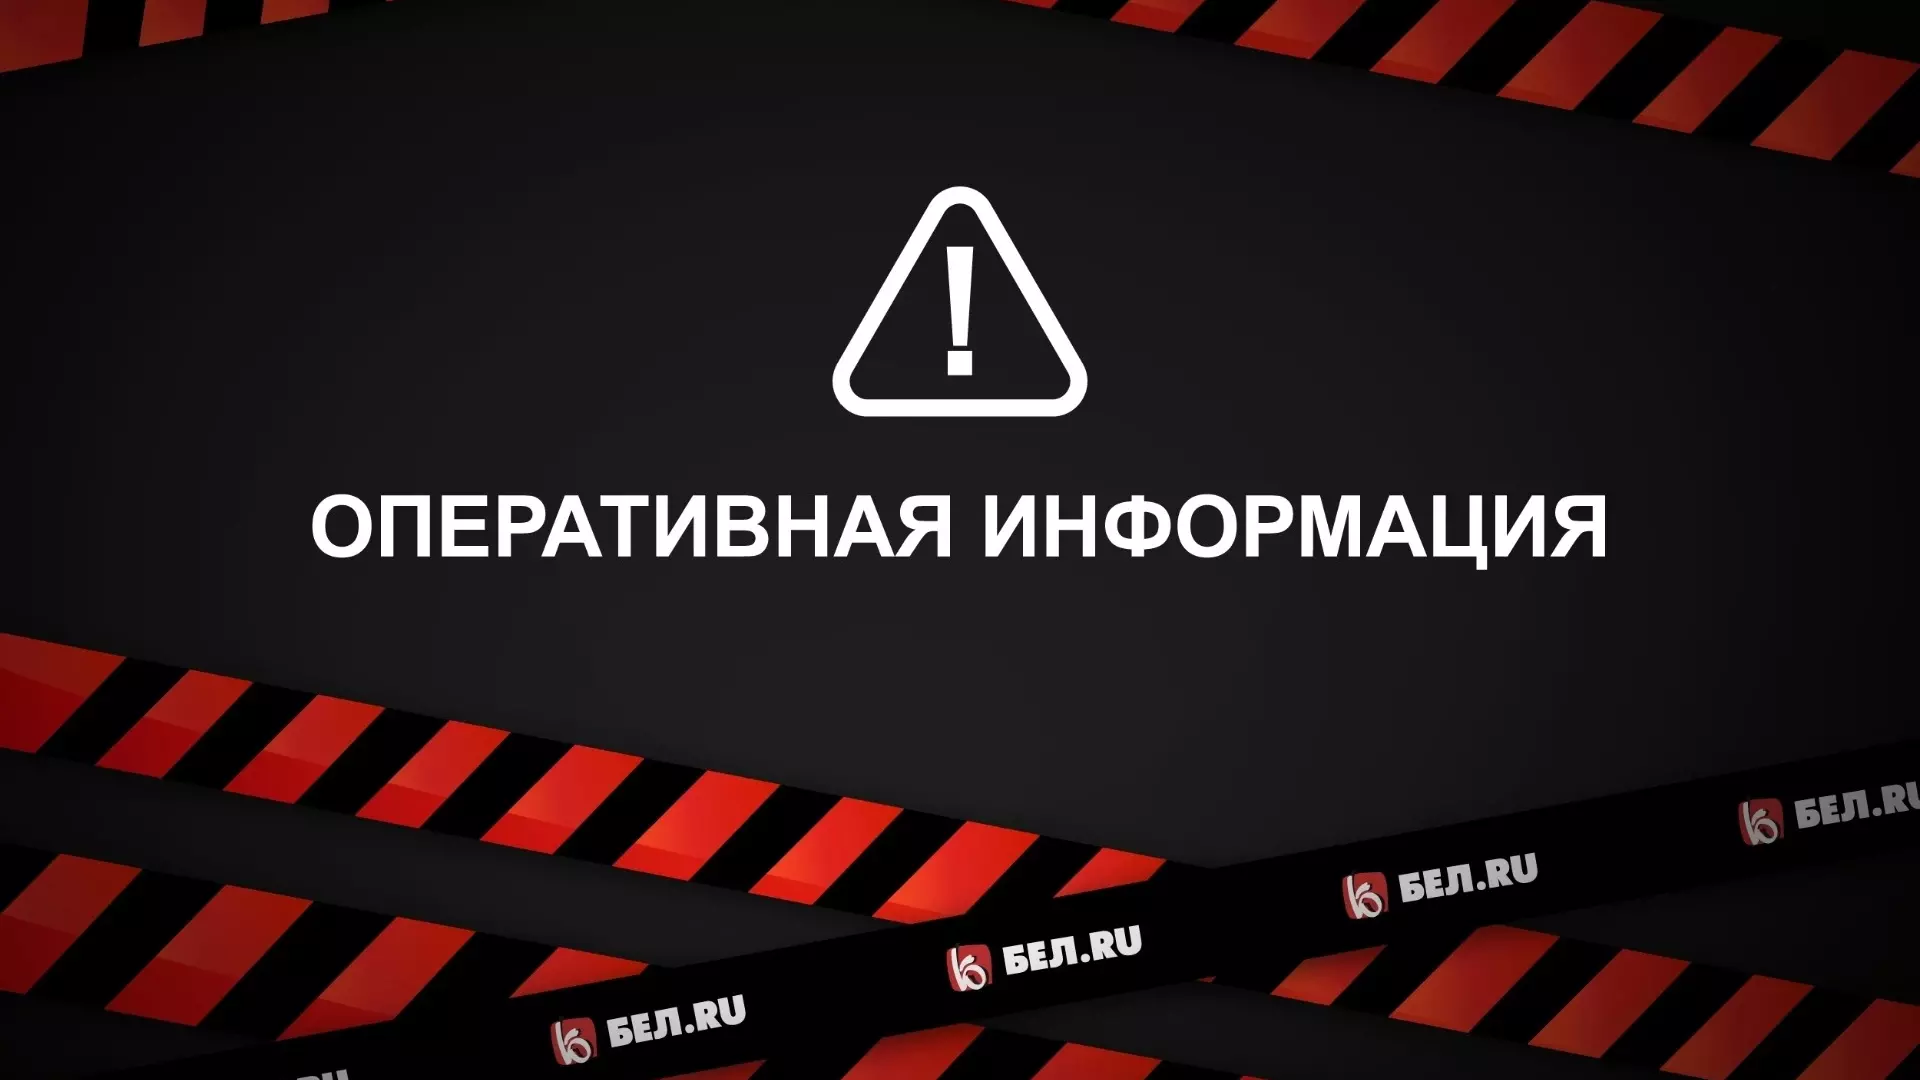 В Белгороде и Белгородском районе объявили ракетную опасность